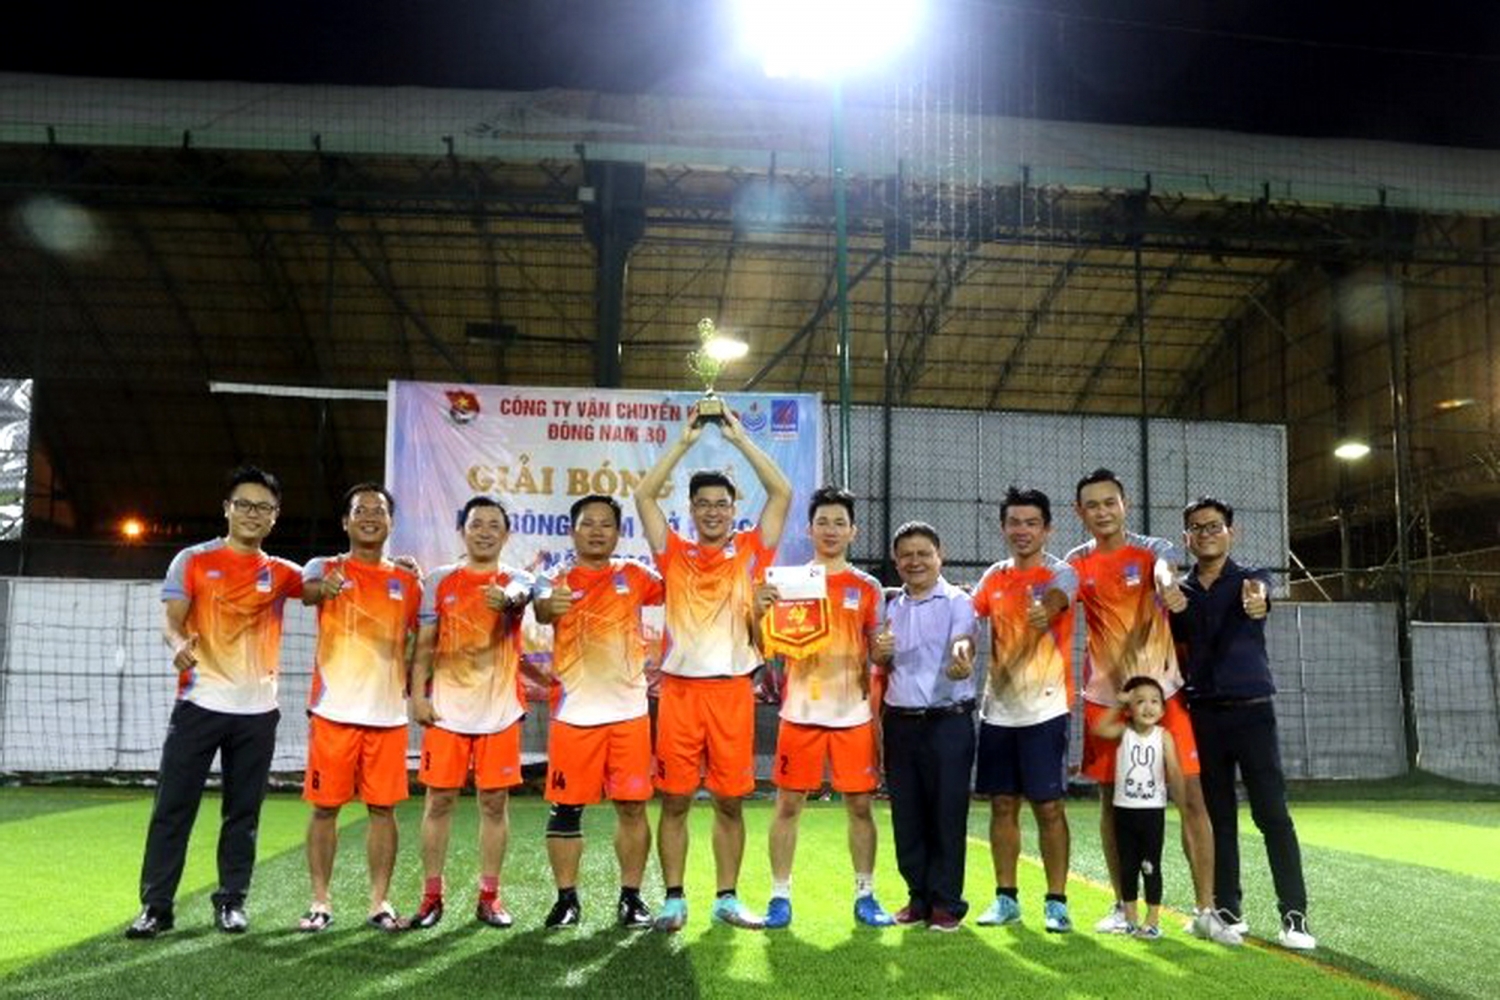 Đội chủ nhà KĐN đã xuất sắc giành chức Vô địch Giải bóng đá KĐN mở rộng 2022